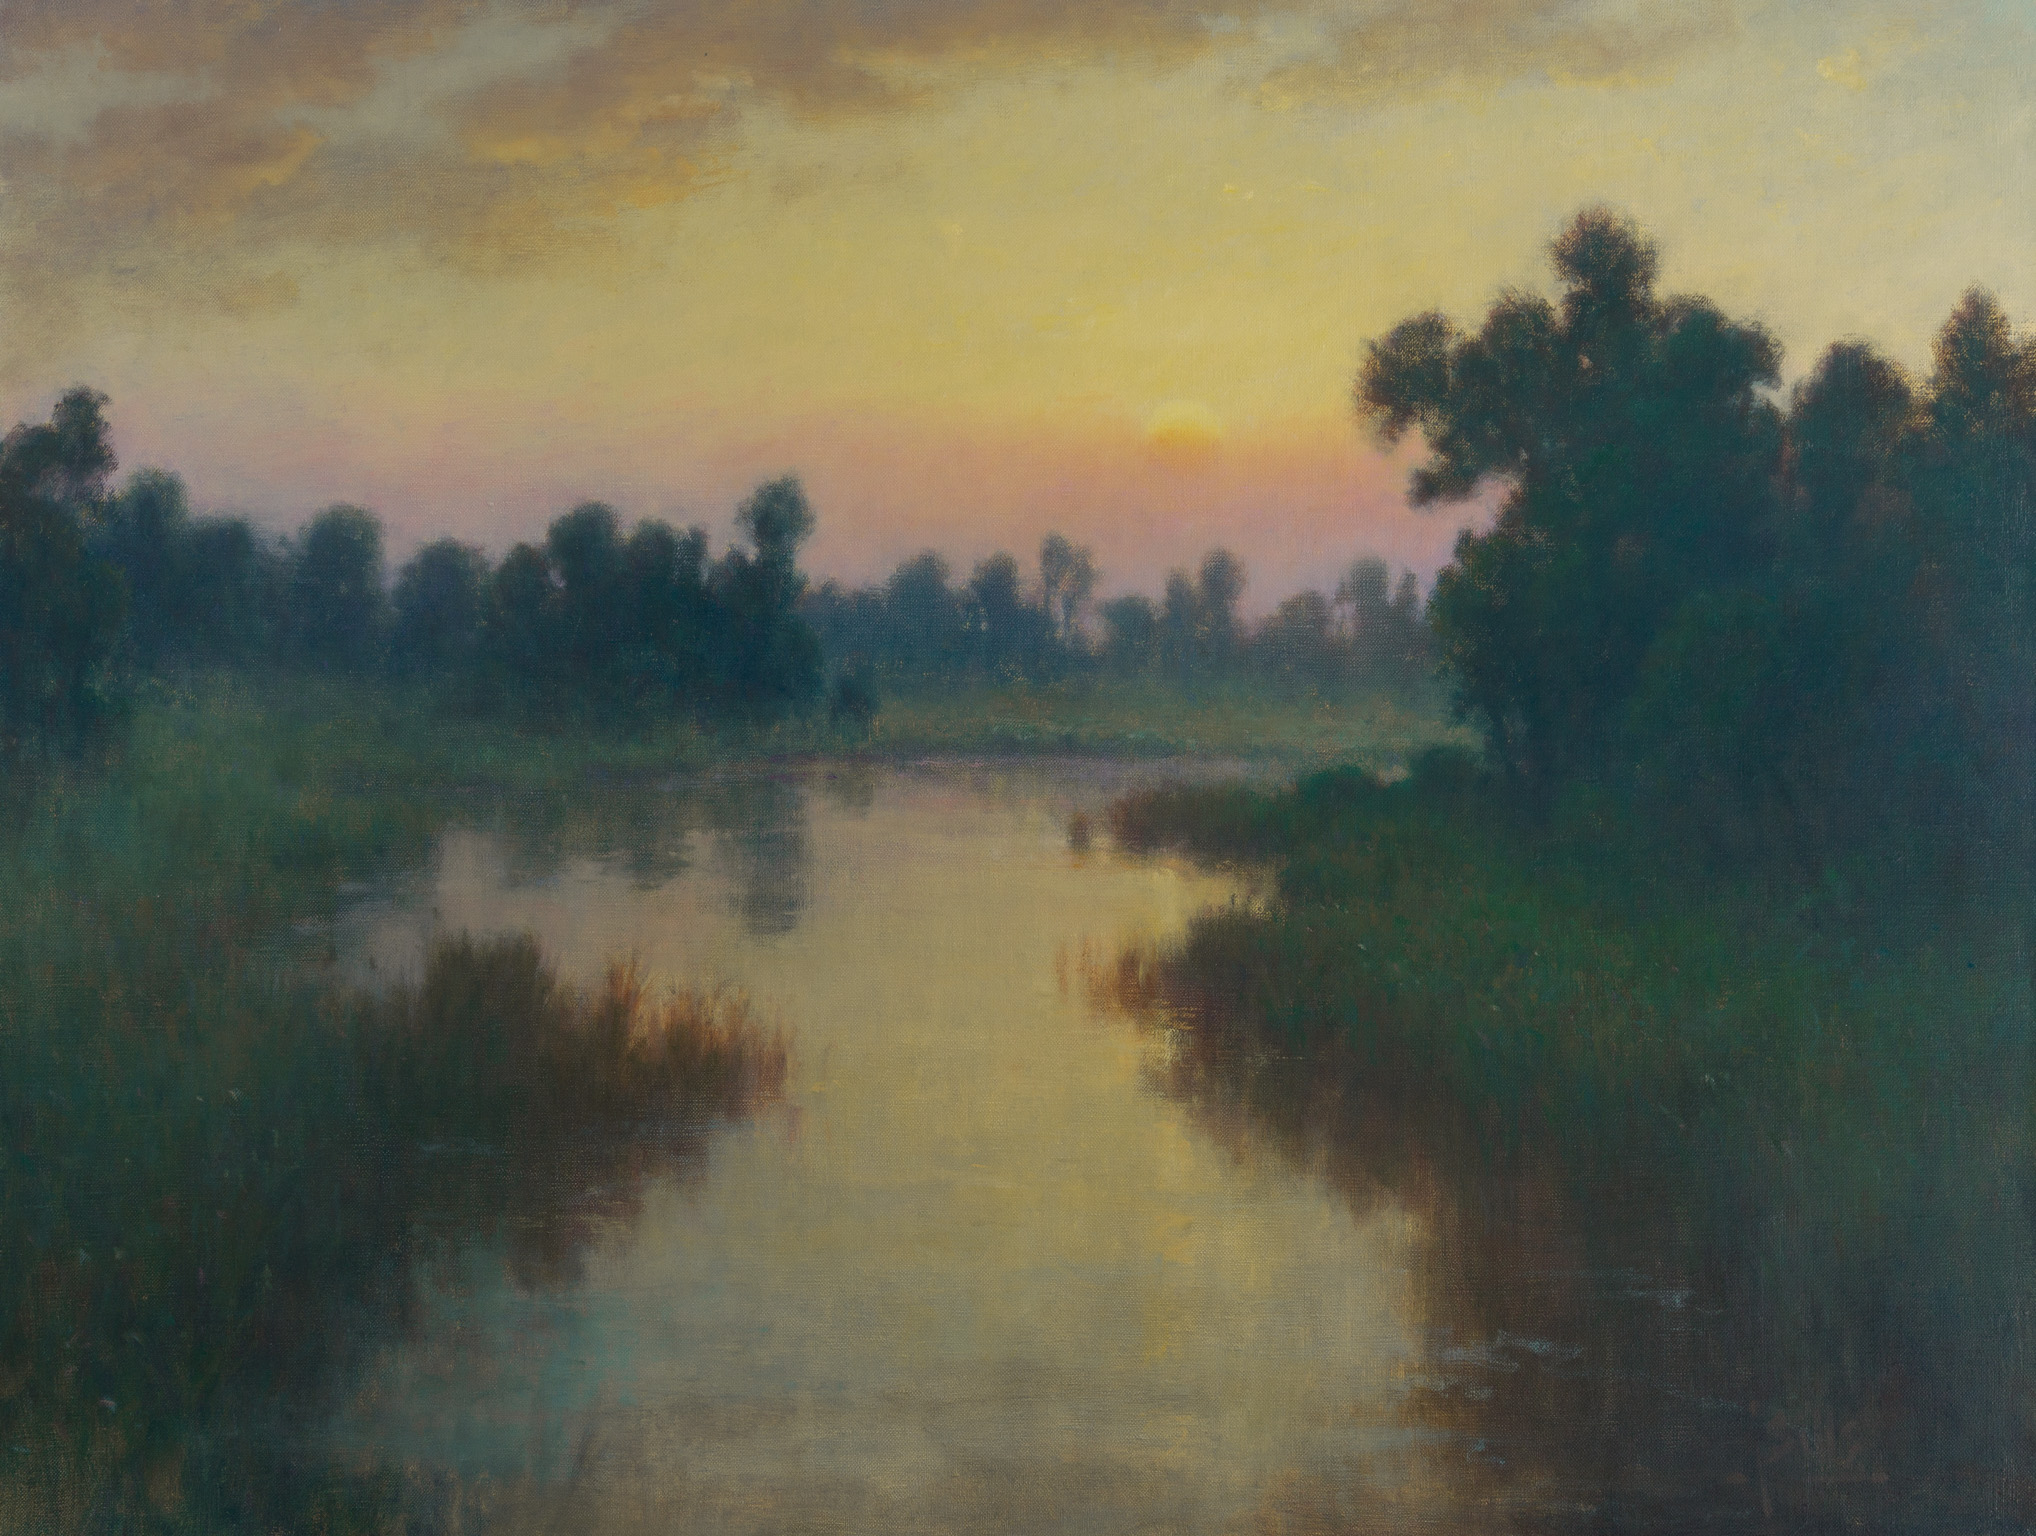 Sills, "Sleepy Dawn," Oil on Canvas, 32 x 42 in. 